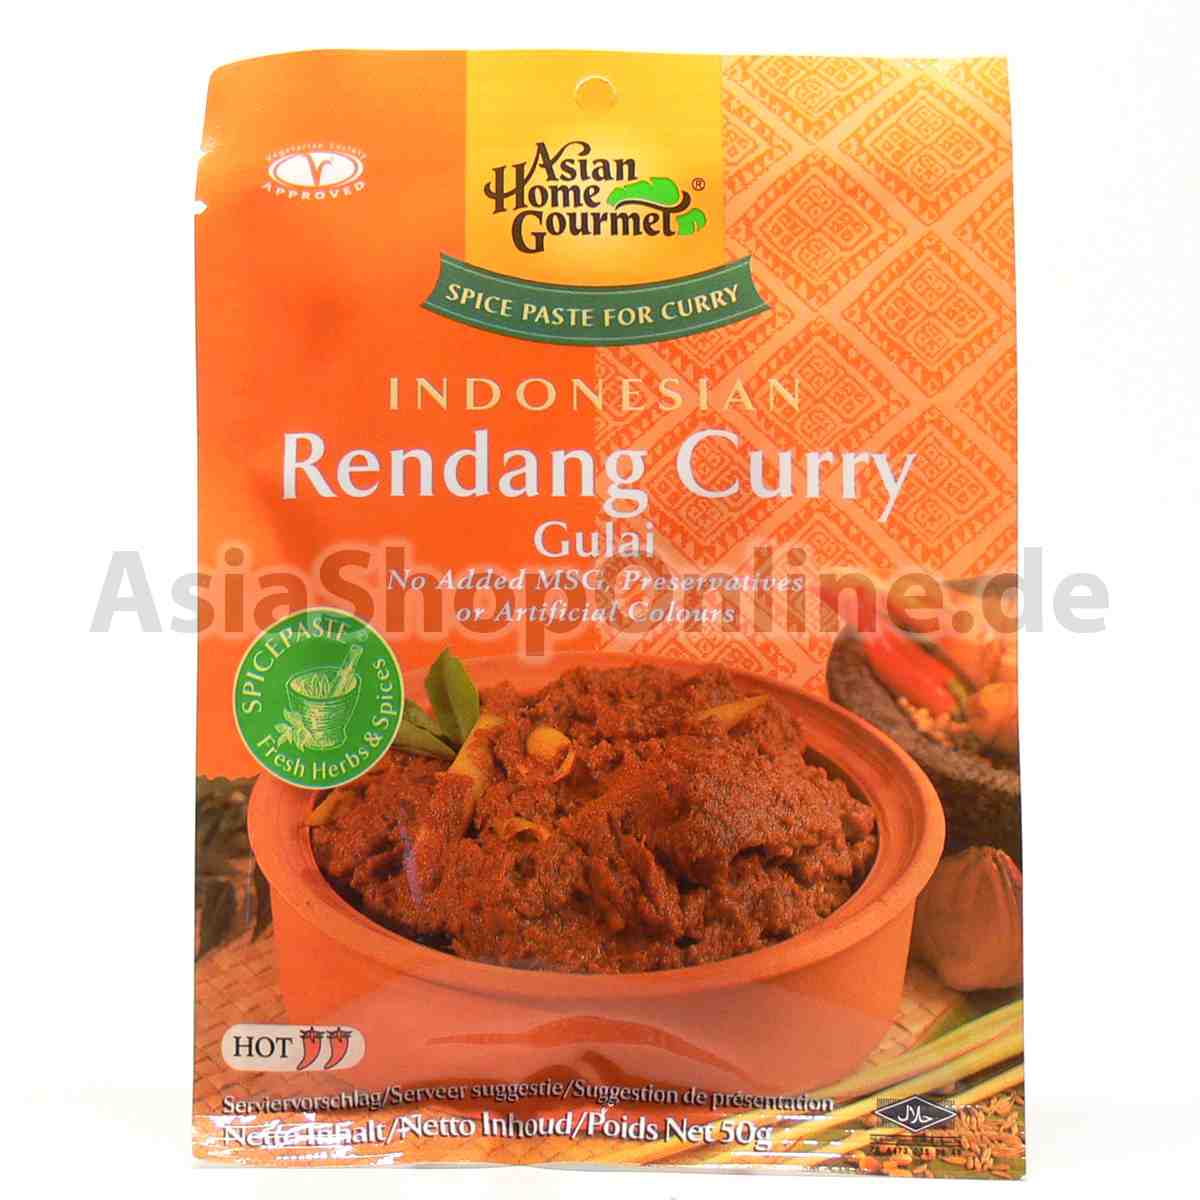 Currypaste für indonesisches Rendang - Asian Home Gourmet - 50g